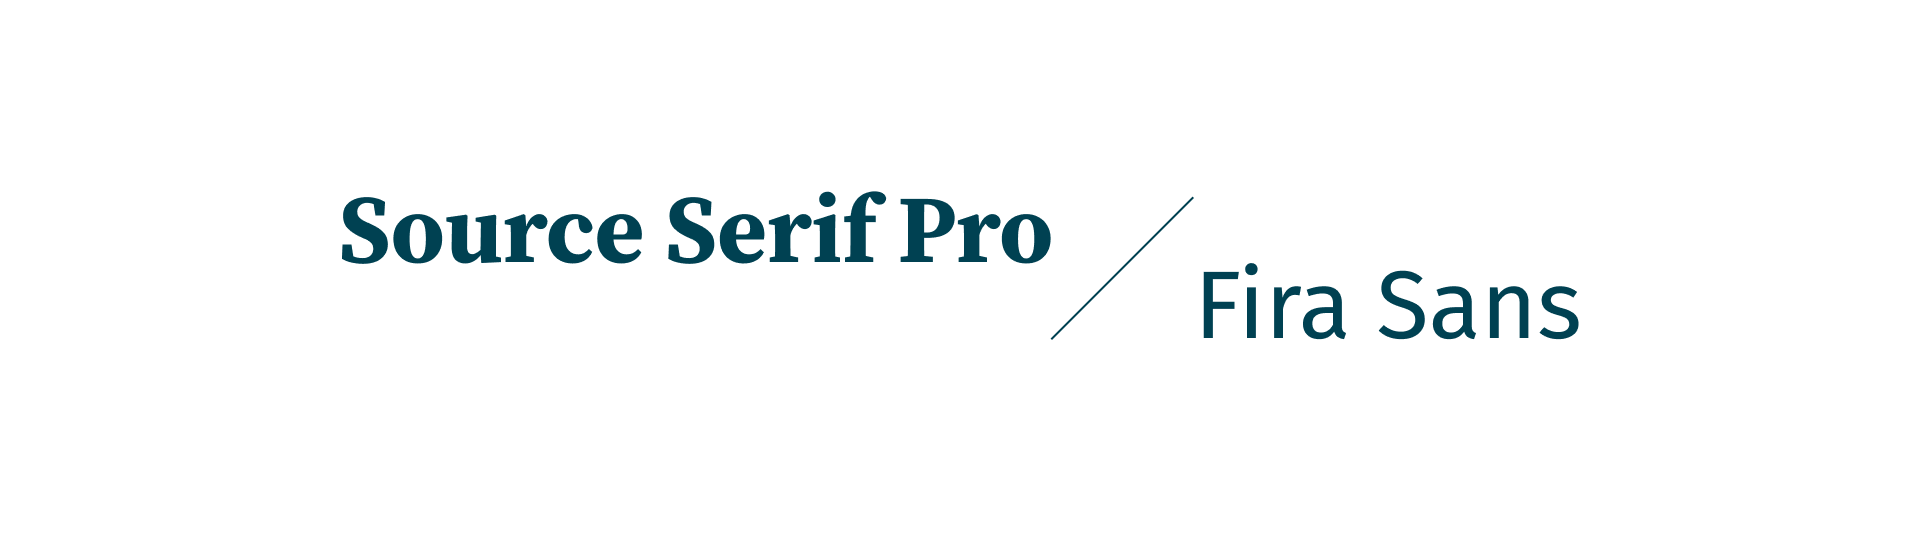 Visuale weergave van het lettertypes Source Serif Pro en Fira Sans.